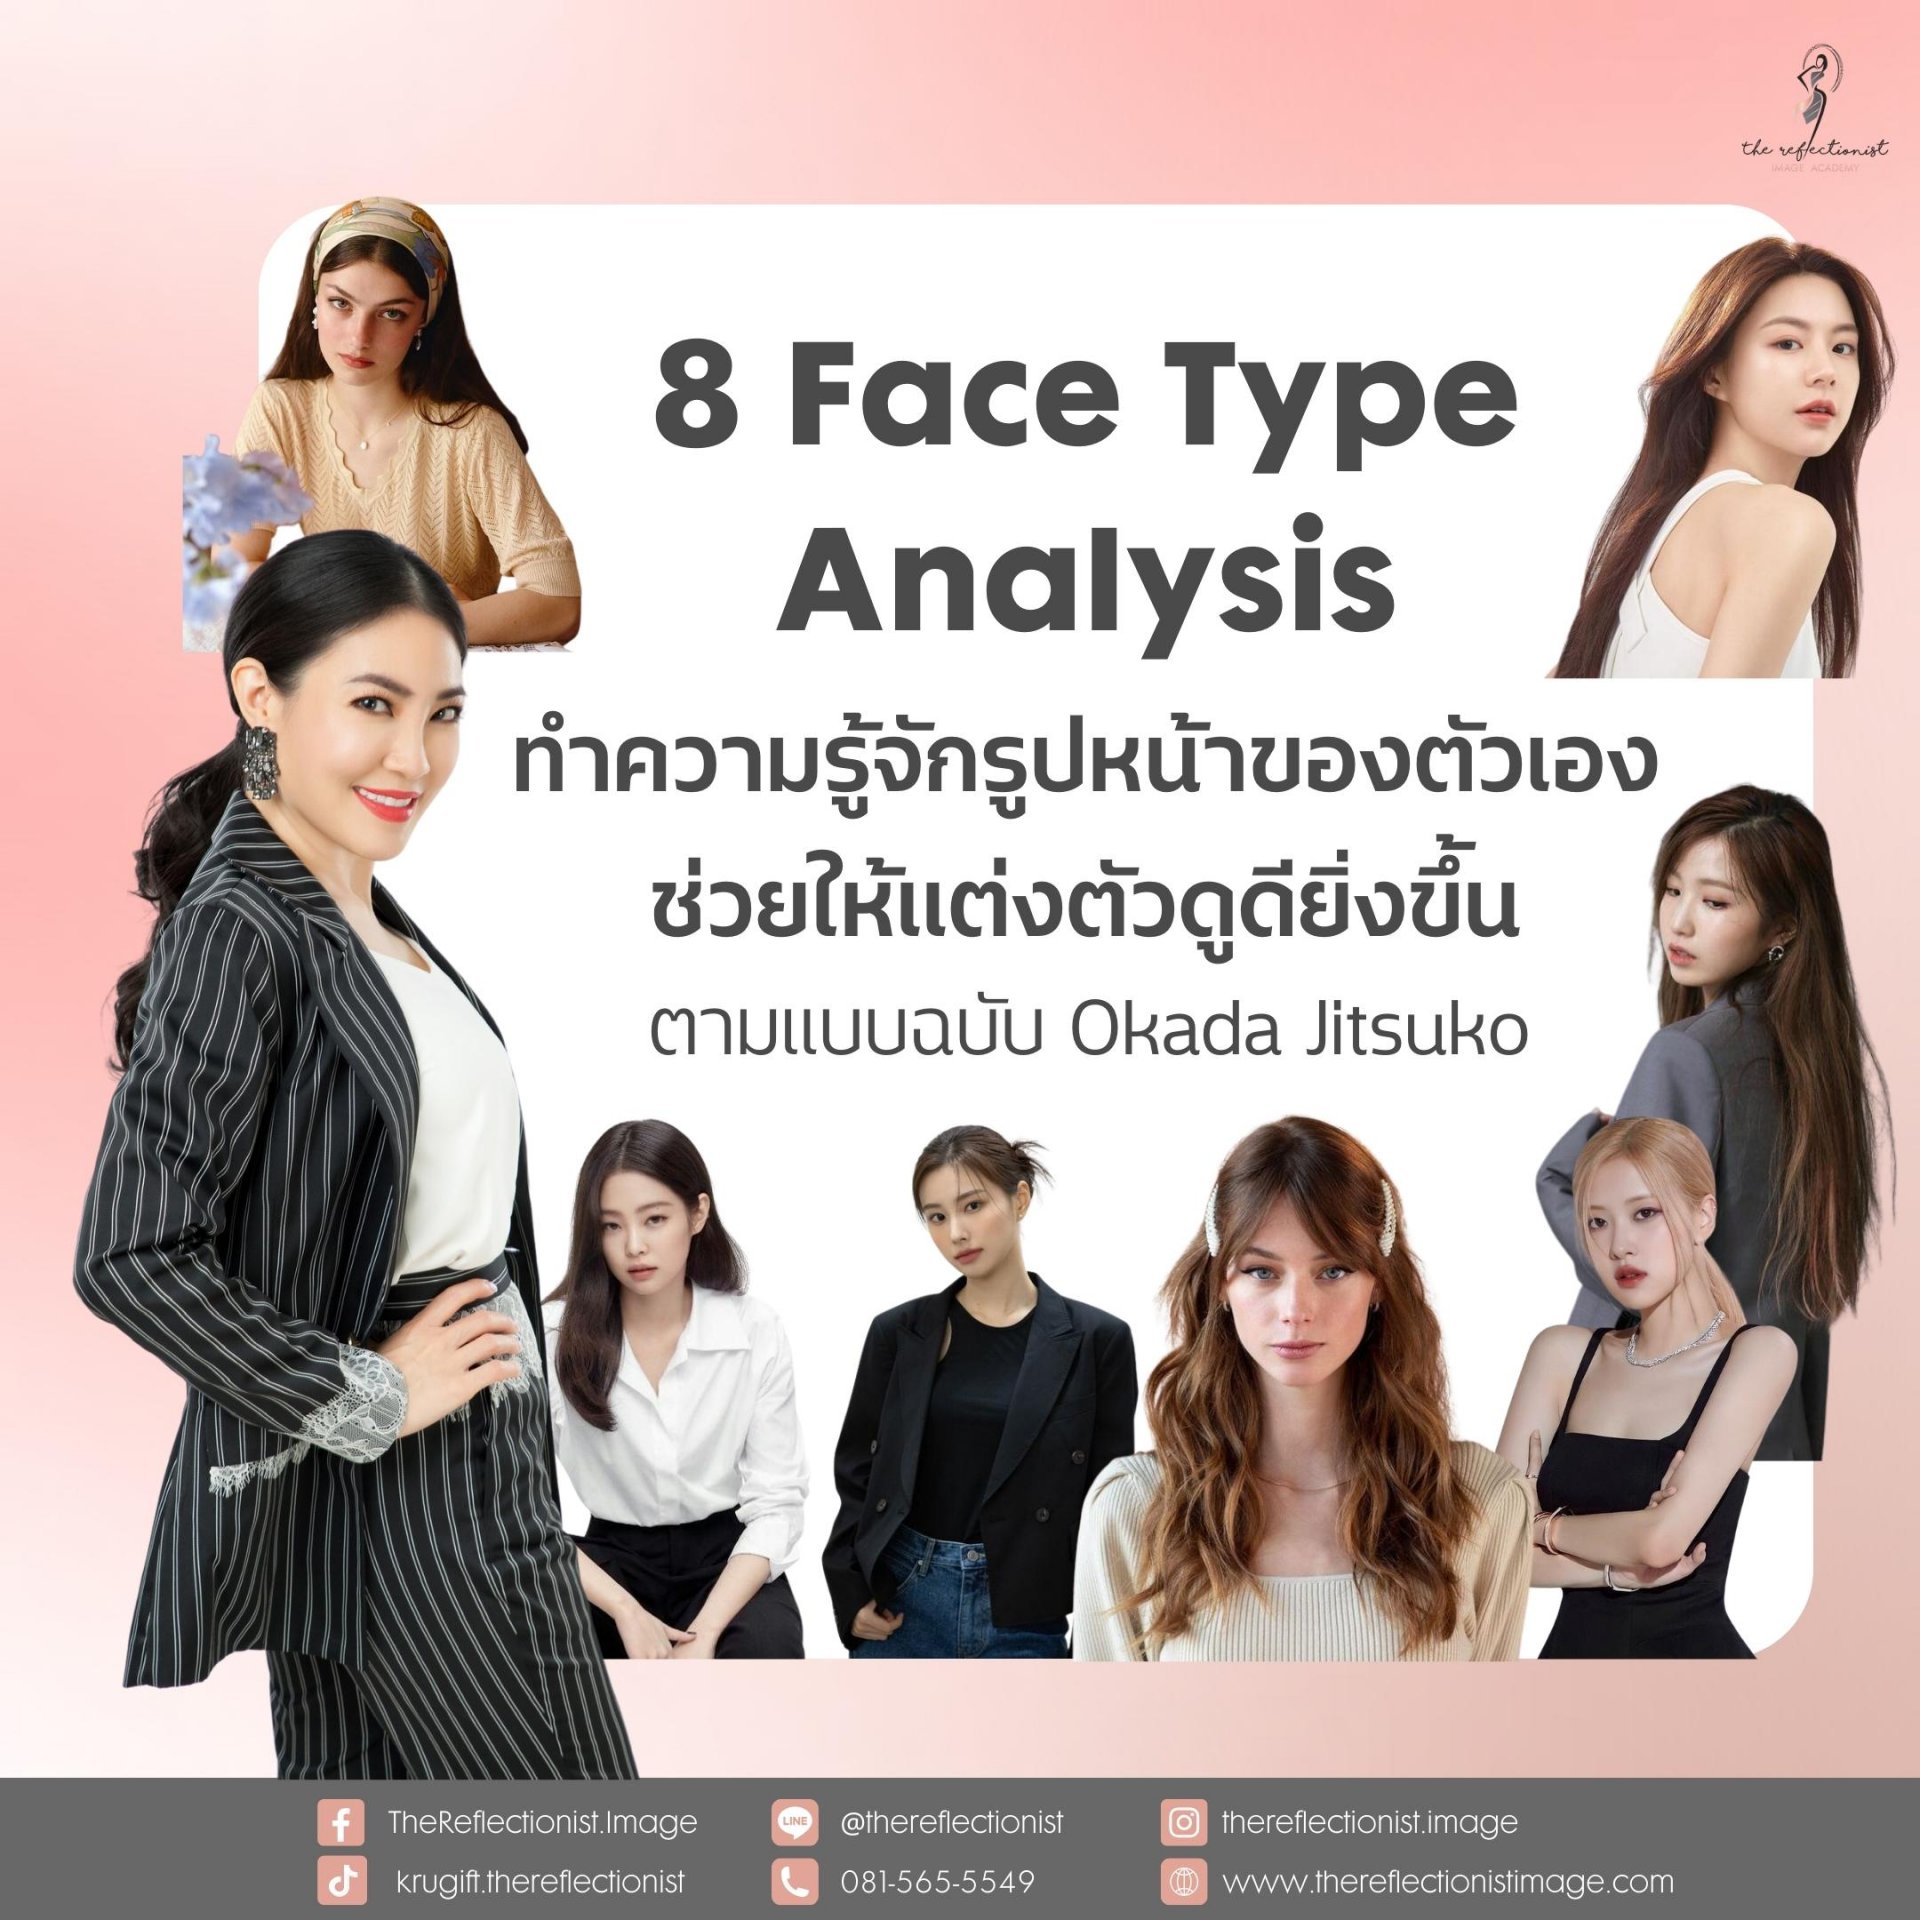 8 Face Type Analysis ทำความรู้จักรูปหน้าของตัวเอง ช่วยให้แต่งตัวดูดียิ่งขึ้น ตามแบบฉบับ Okada Jitsuko